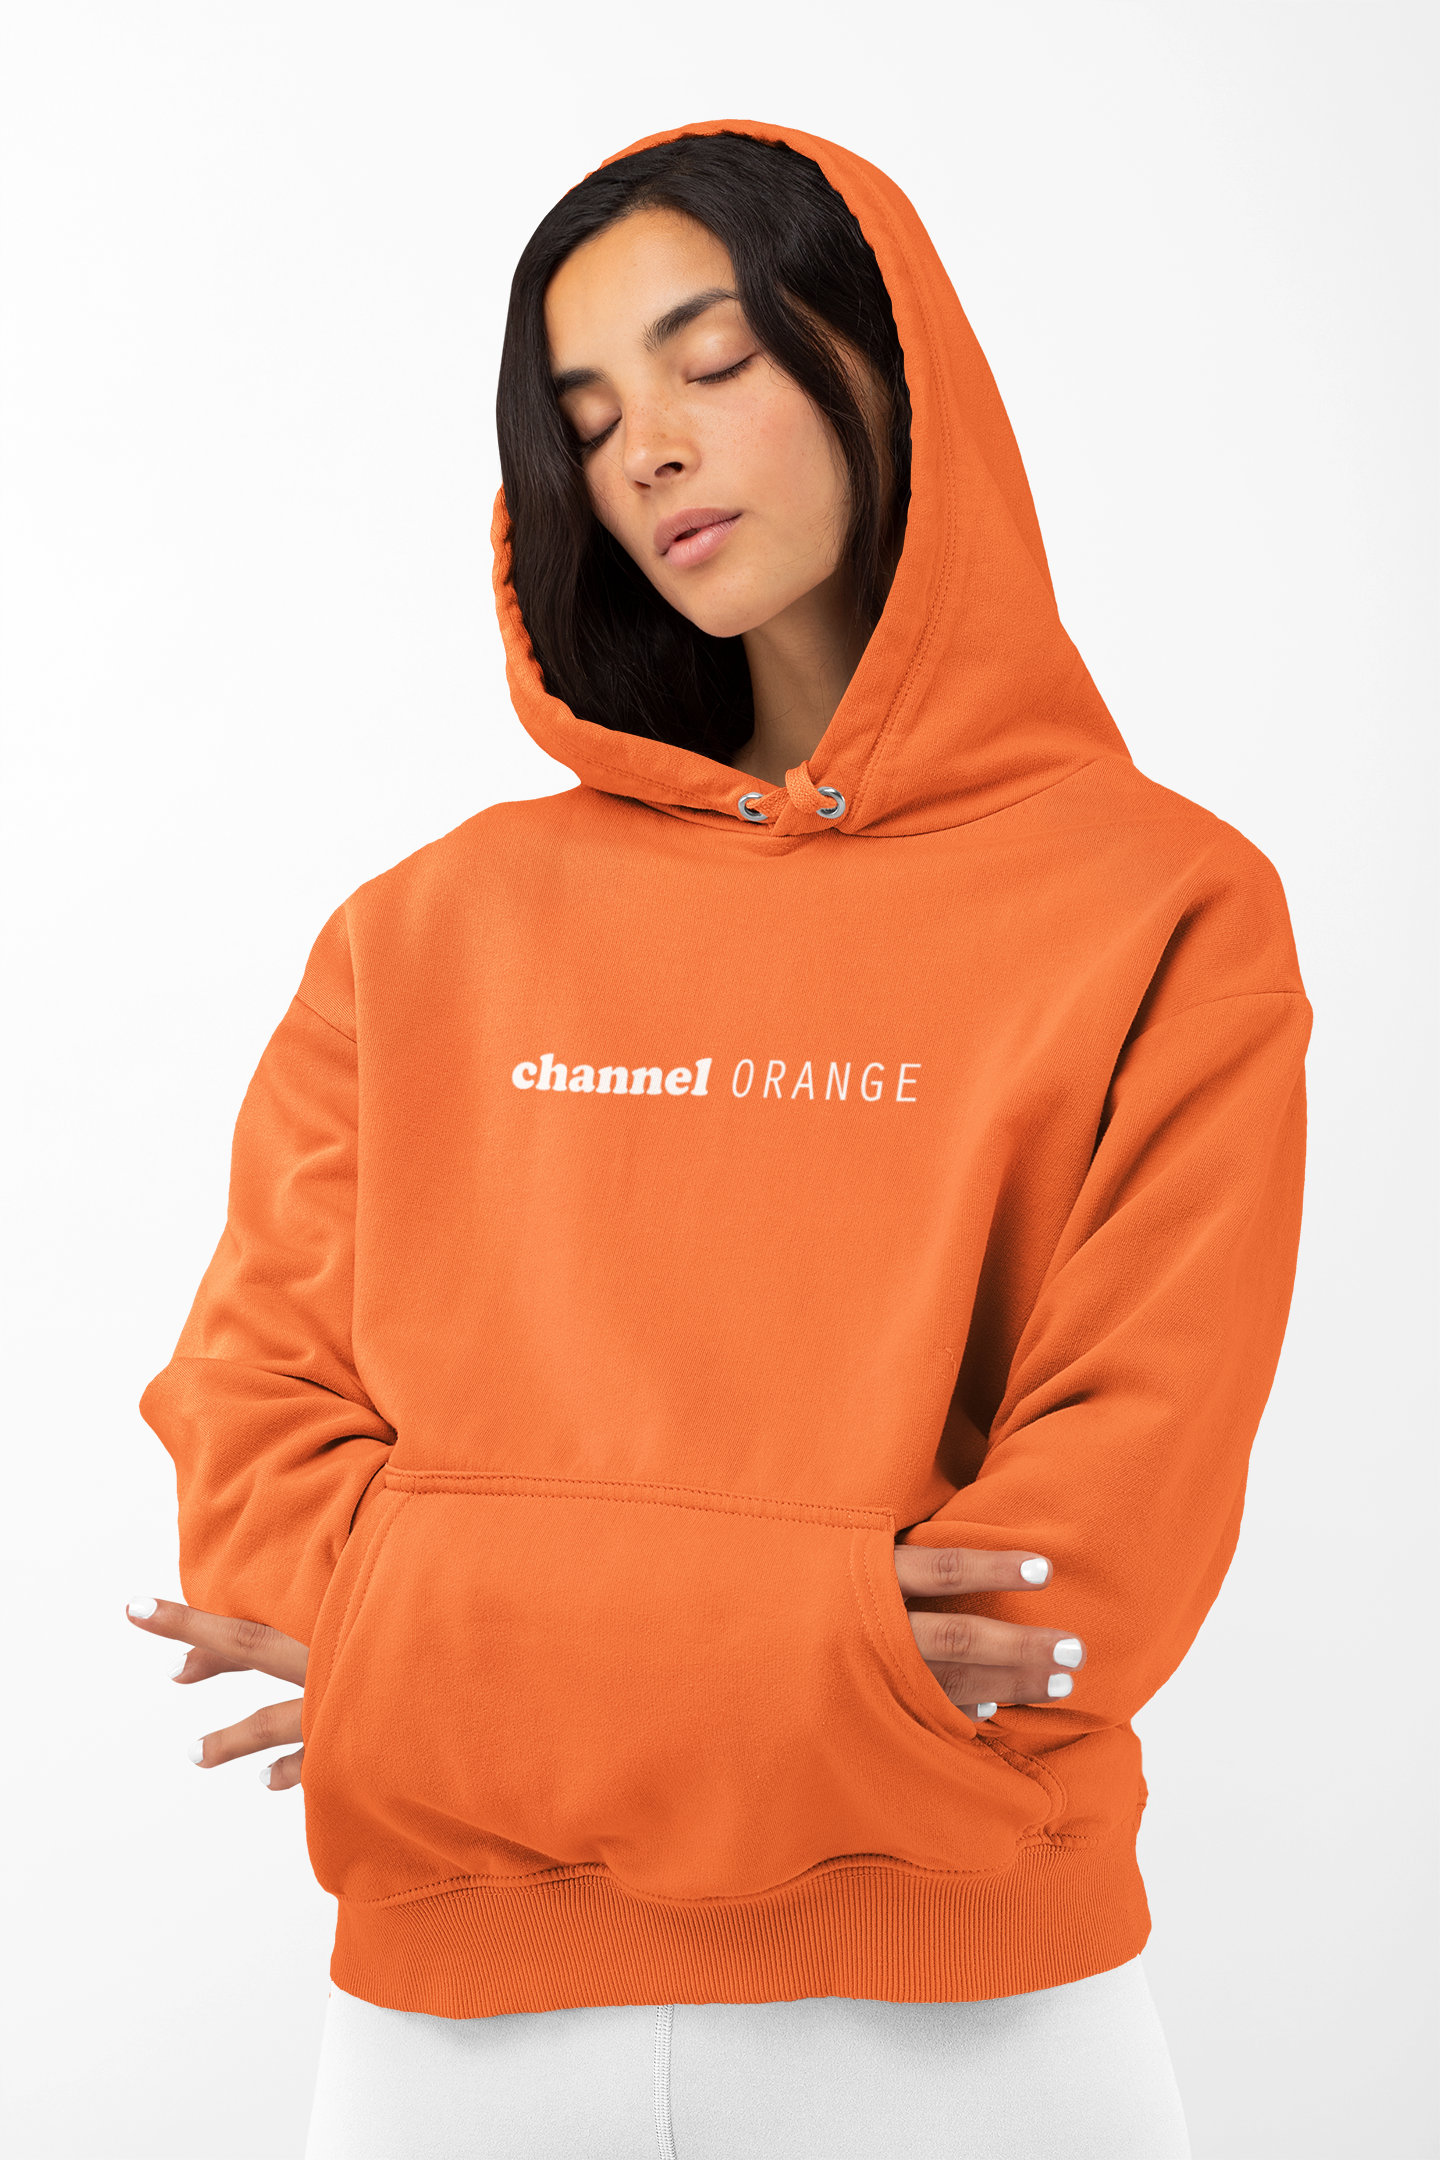 Frank Ocean Channel Orange Inspired Unisex Hoodie Sweatshirt -   Australia